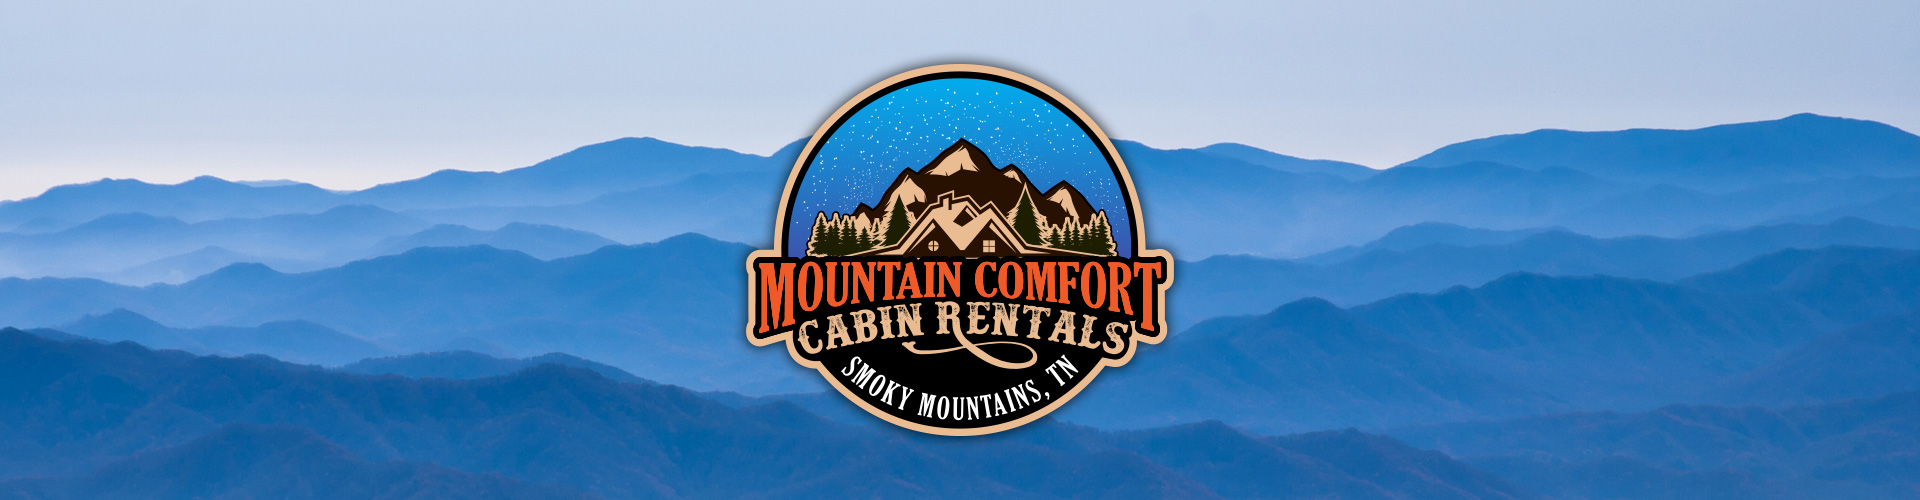 Mountain Comfort Cabin Rentals Banner